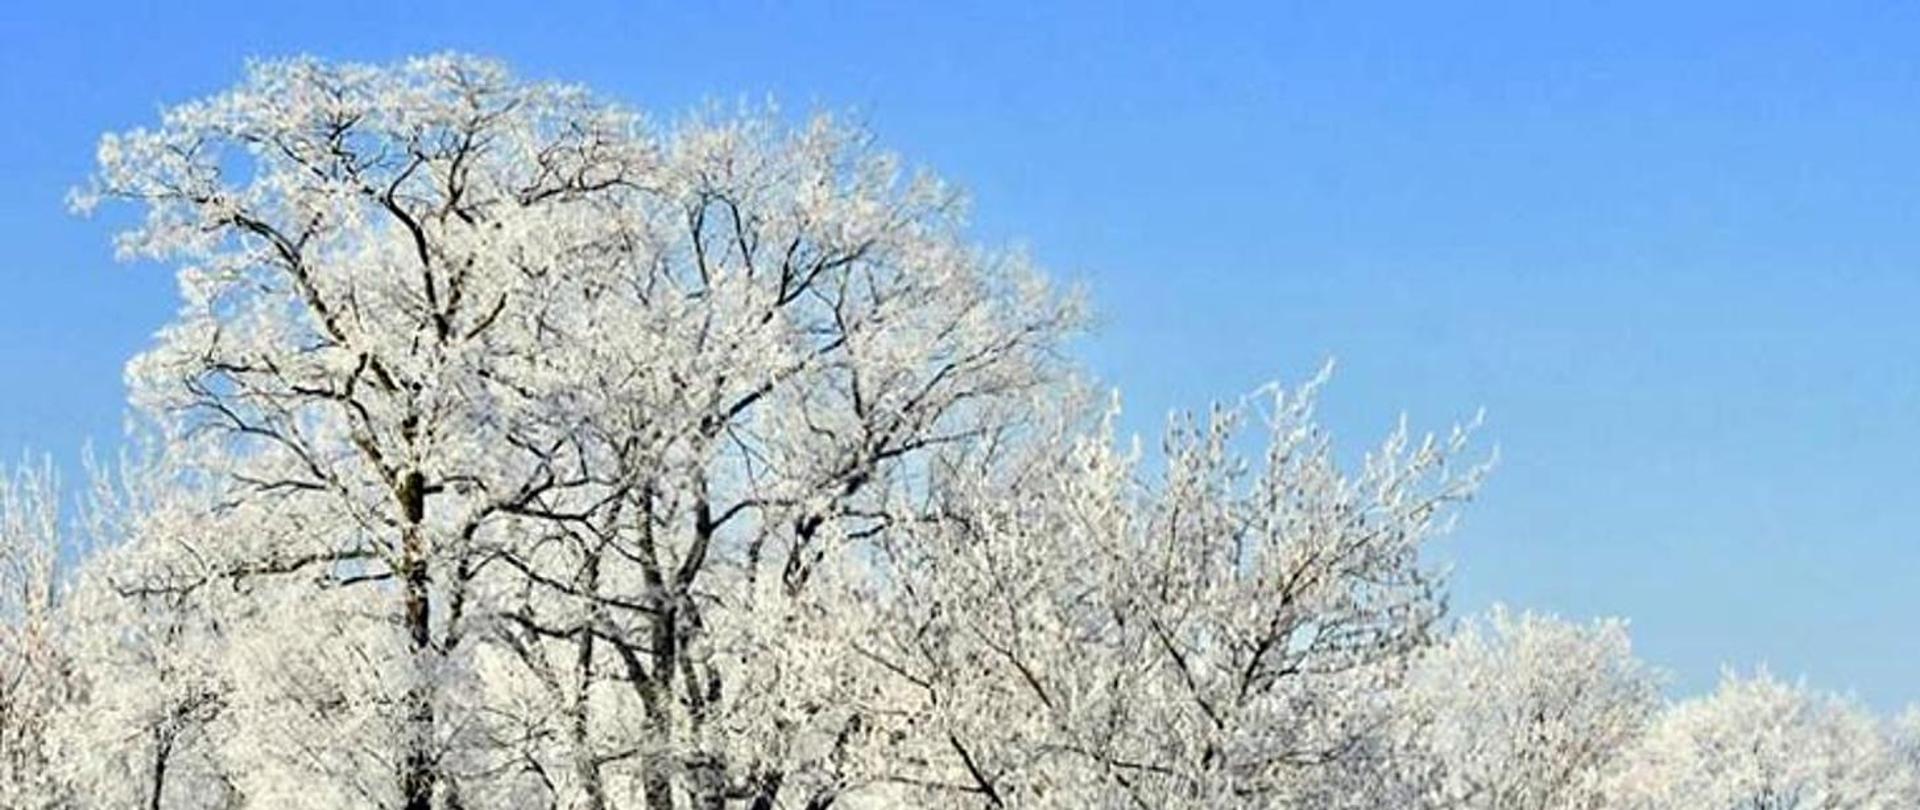 Zdjęcie przedstawia omarznięte korony drzew na tle błękitnego nieba